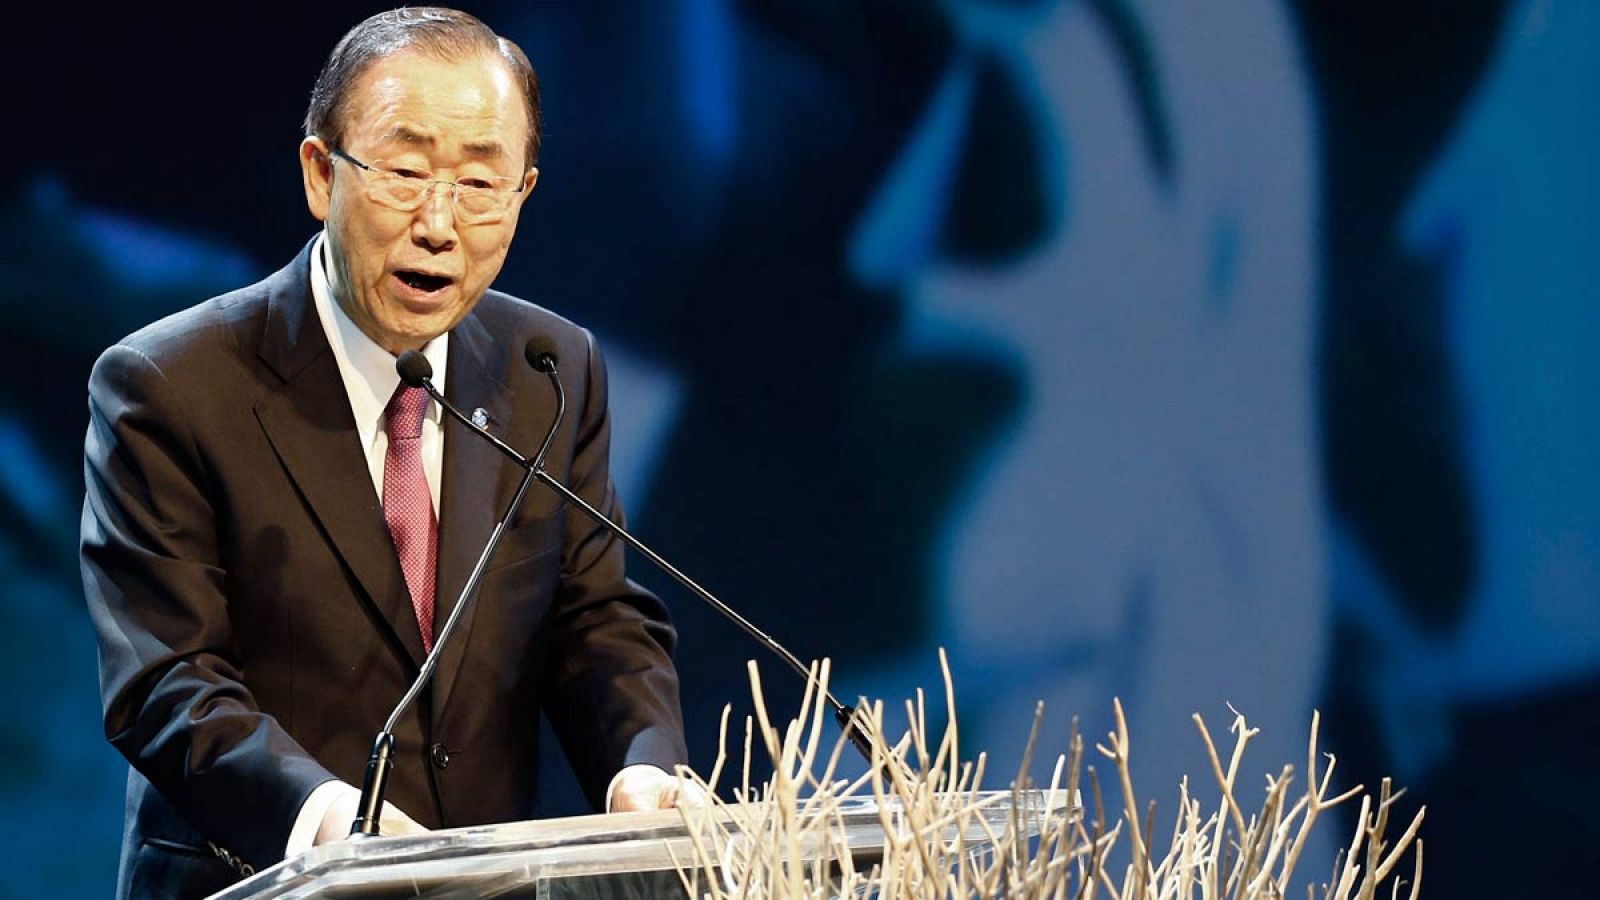 El secretario general de Naciones Unidas, Ban Ki-moon, pronuncia su discurso durante la Cumbre Humanitaria de la ONU, en Estambul.